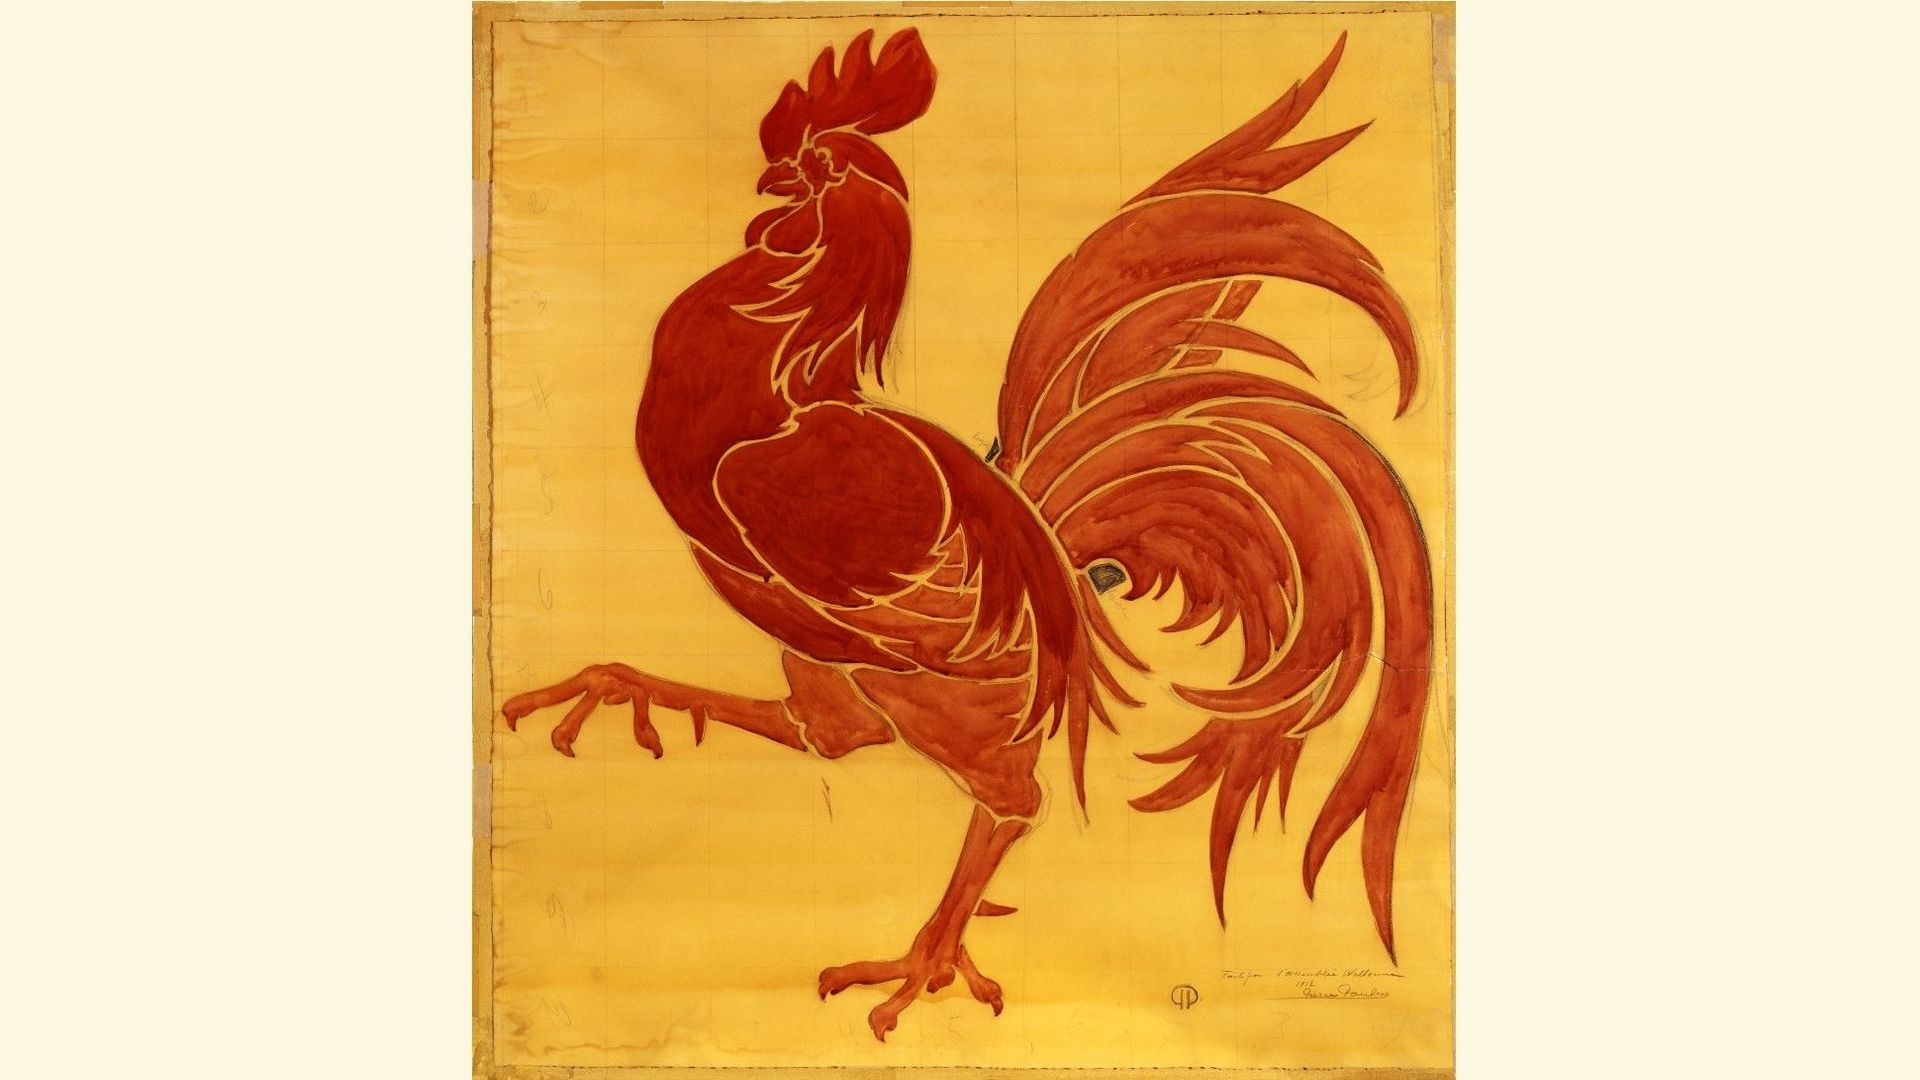 Aquarelle de Pierre Paulus représentant le coq hardi. Dessin original servant d'emblème et de drapeau à la Wallonie.